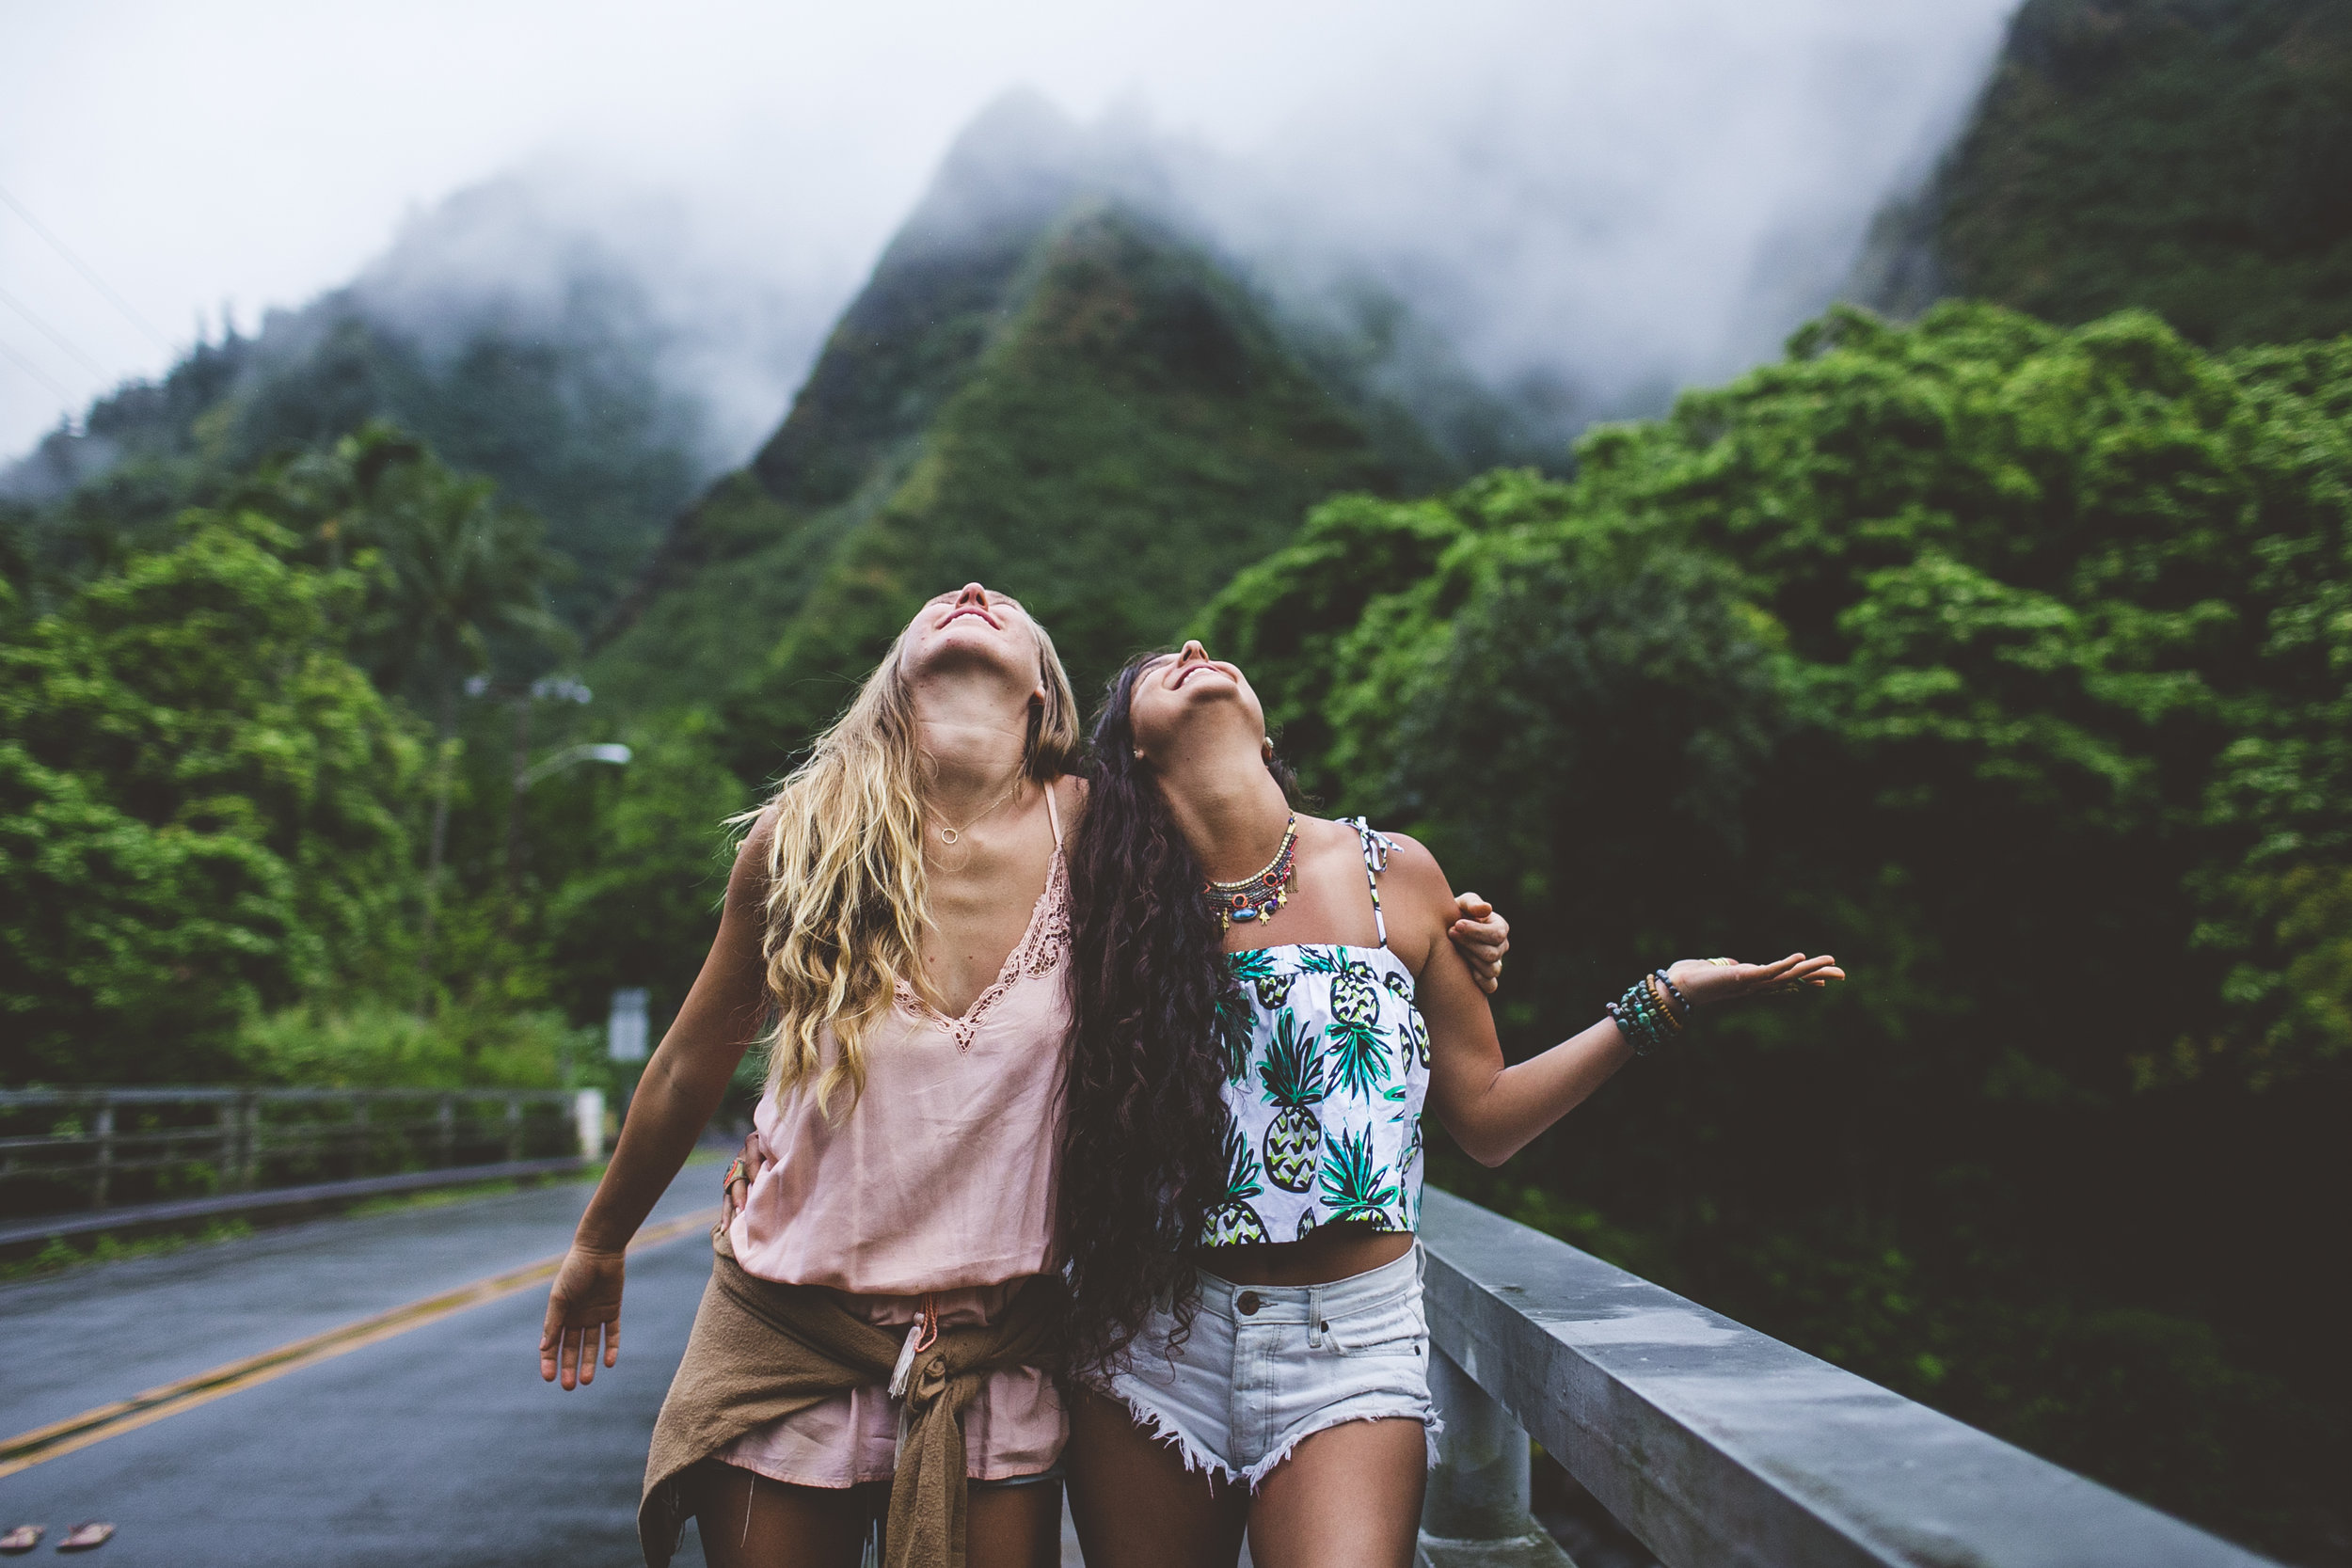 Young women having fun in hawaii photos